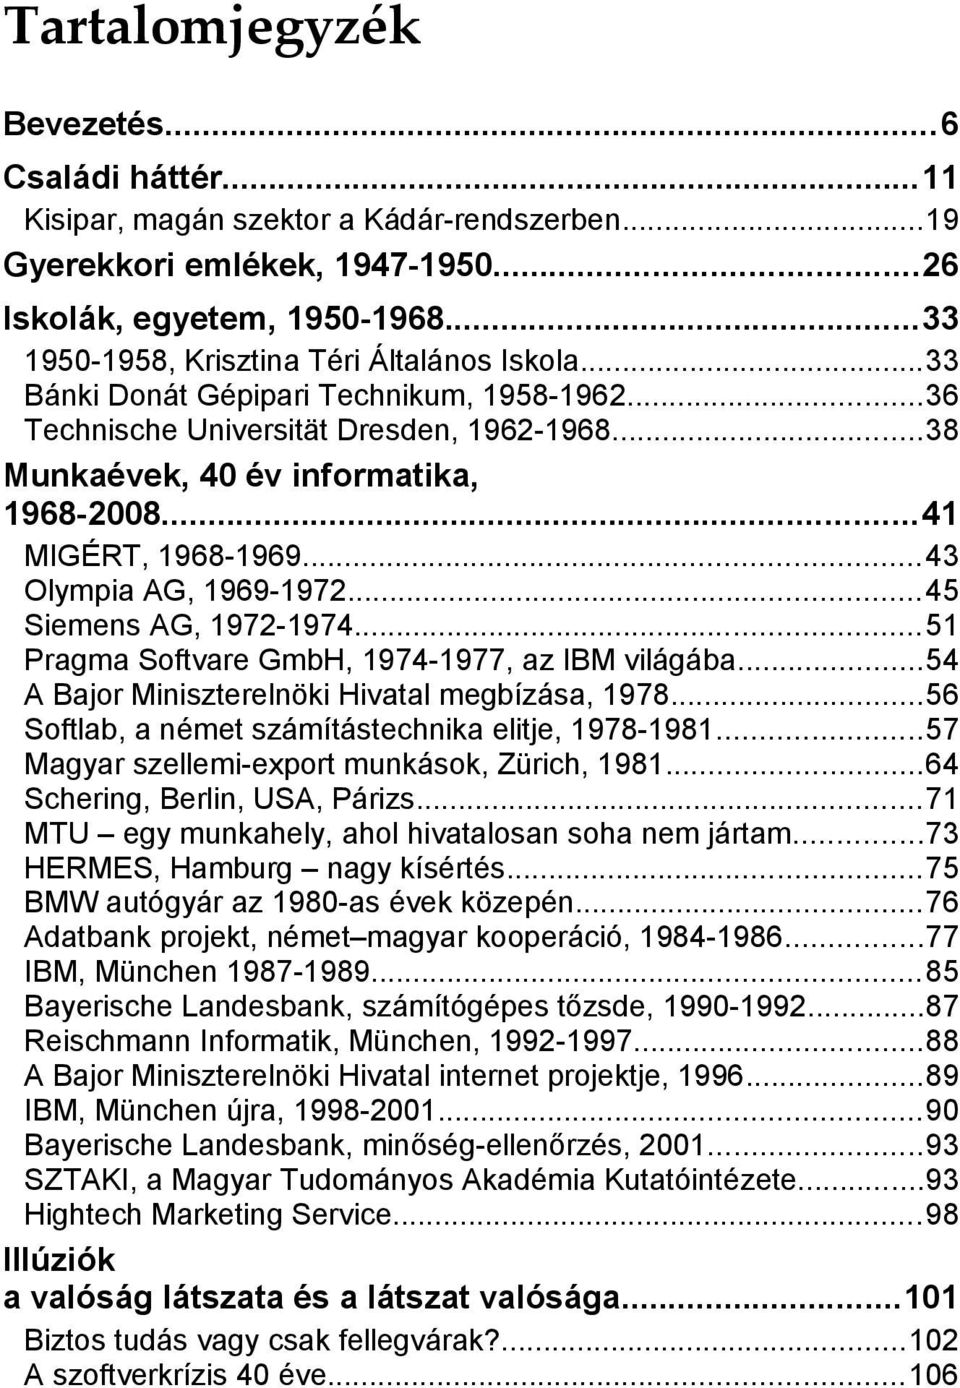 ..41 MIGÉRT, 1968-1969...43 Olympia AG, 1969-1972...45 Siemens AG, 1972-1974...51 Pragma Softvare GmbH, 1974-1977, az IBM világába...54 A Bajor Miniszterelnöki Hivatal megbízása, 1978.